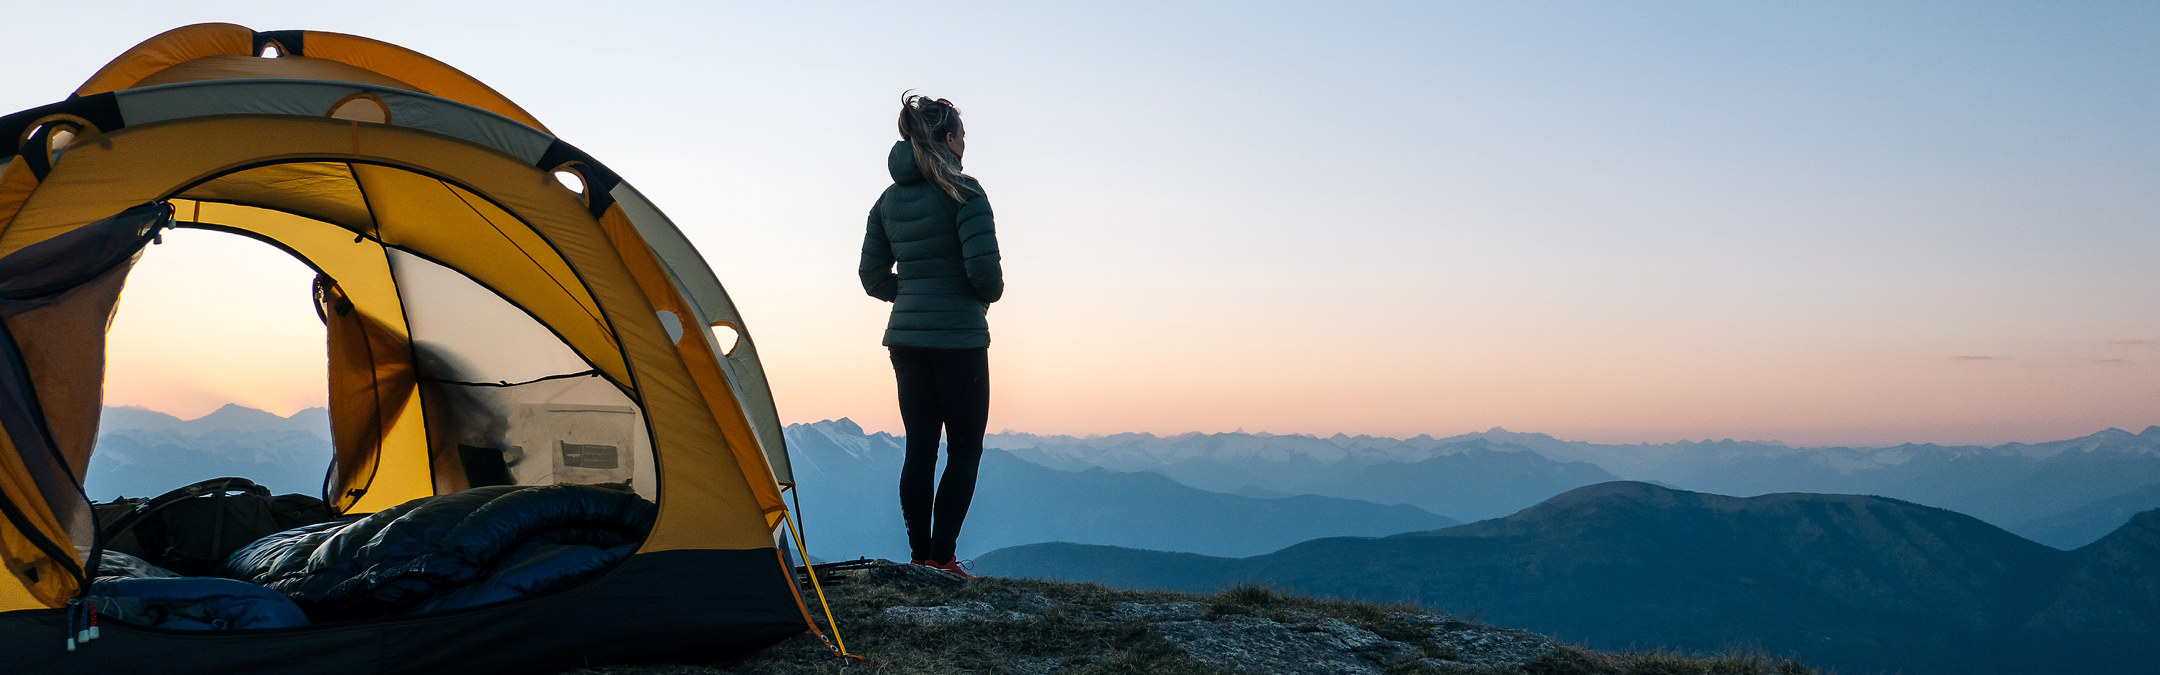 En kvinne står utenfor teltet og ser på utsikten utover fjellet.  